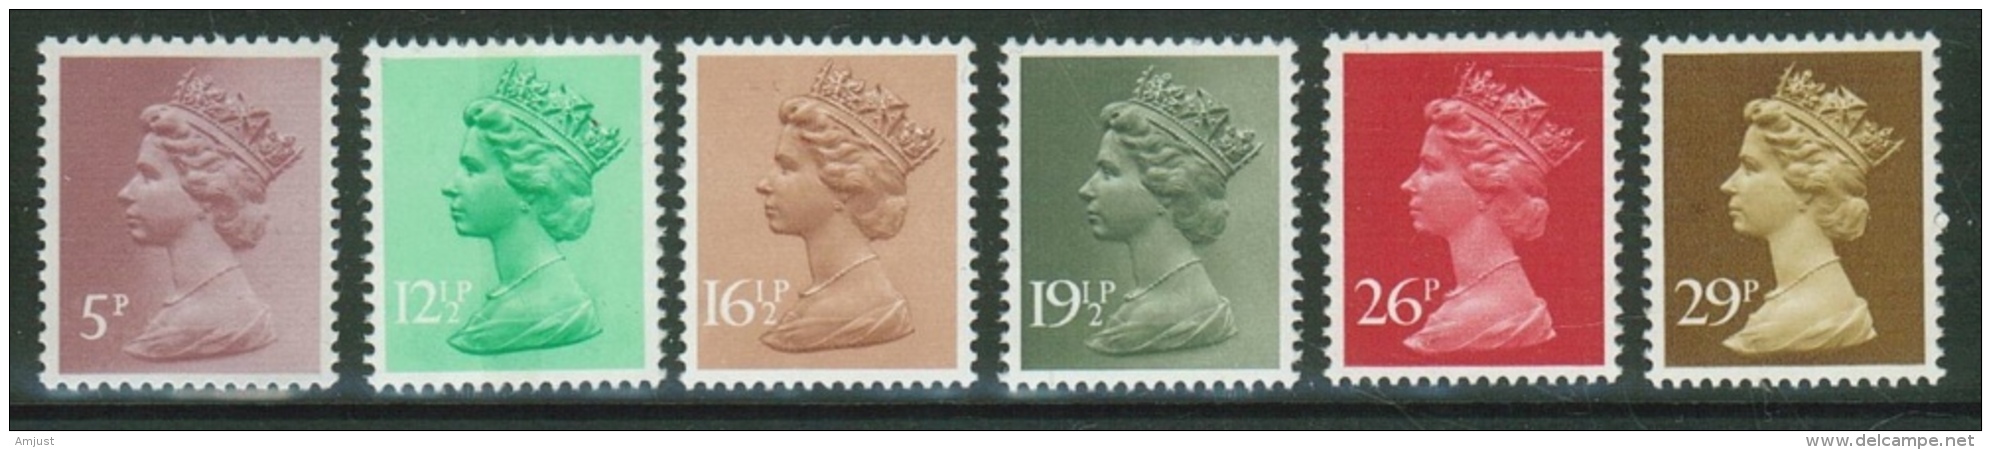 Grande Bretagne// Great Britain//1982 // Série Courante Elizabeth II  Y&T 1017 -1022 ** - Unclassified